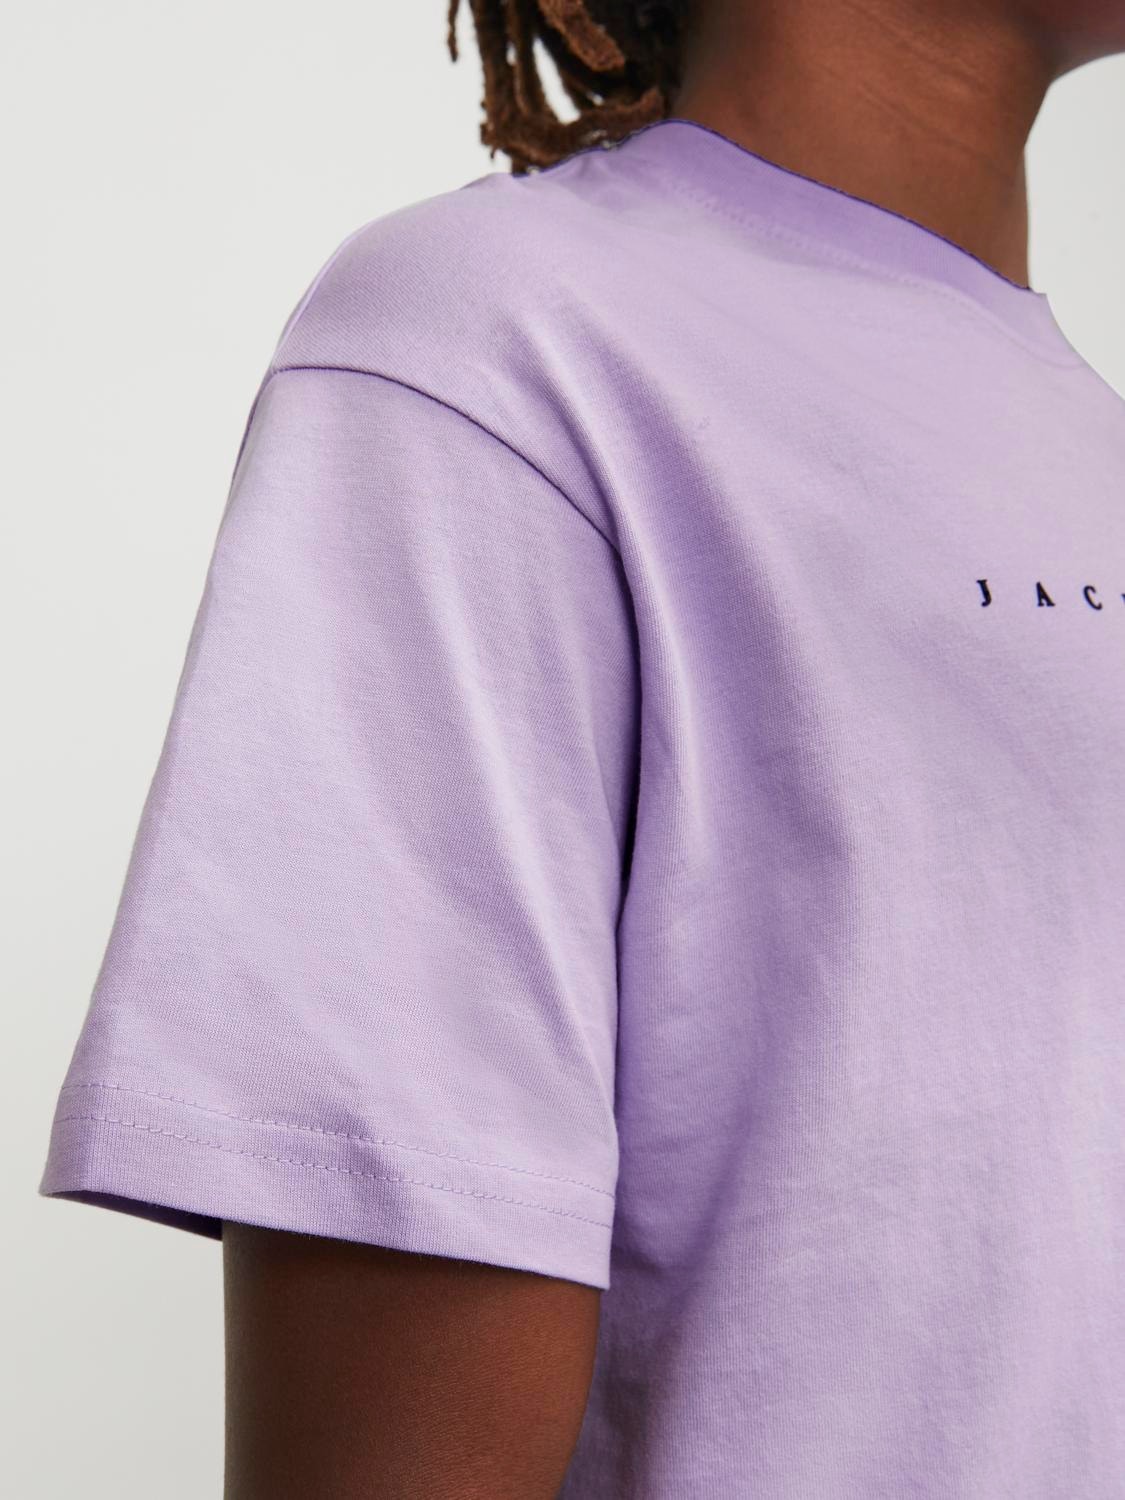 Jack & Jones Logo T-shirt Voor jongens -Purple Rose - 12237435